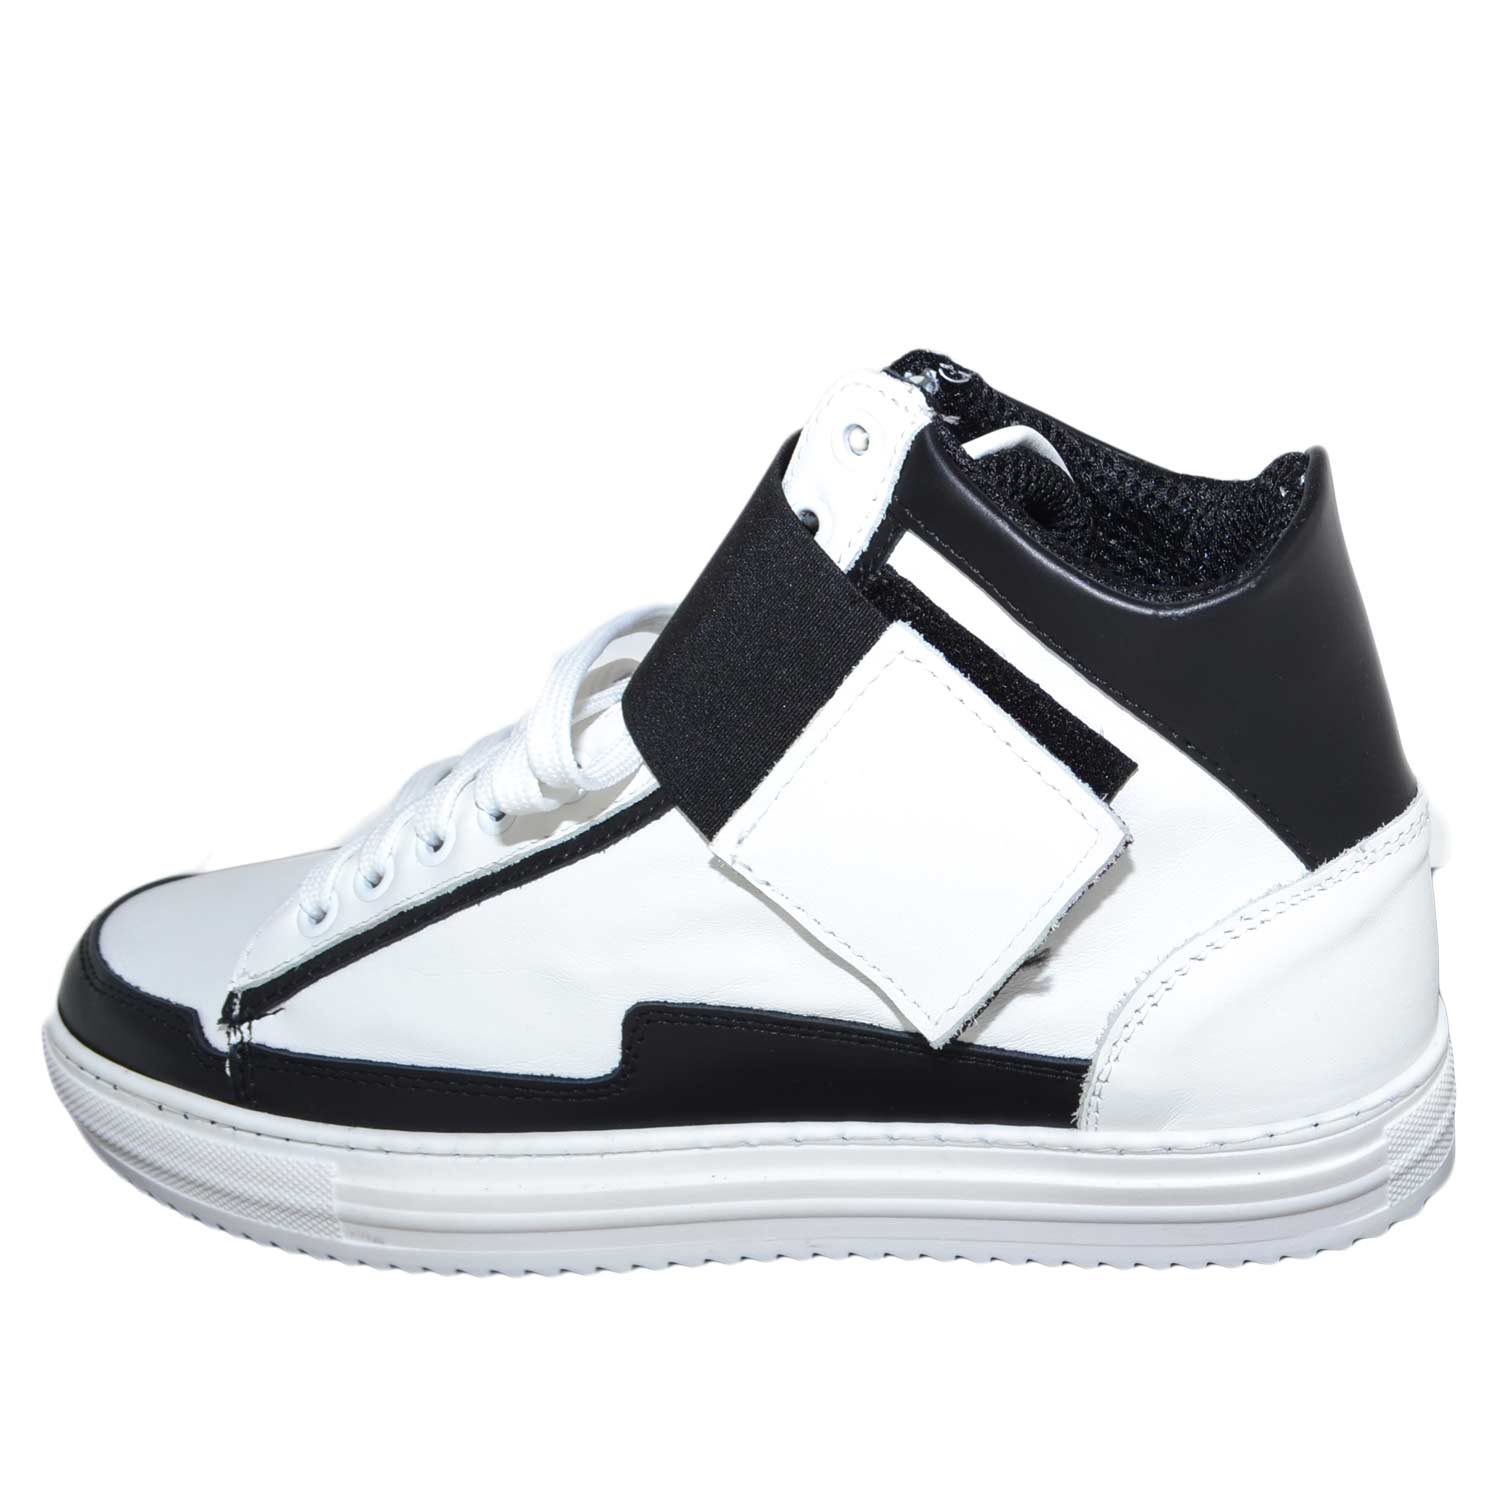 Sneakers alta art.8189 in vera pelle bianco nero bicolore con strappo ed elastico nero made in italy fondo antiscivolo .